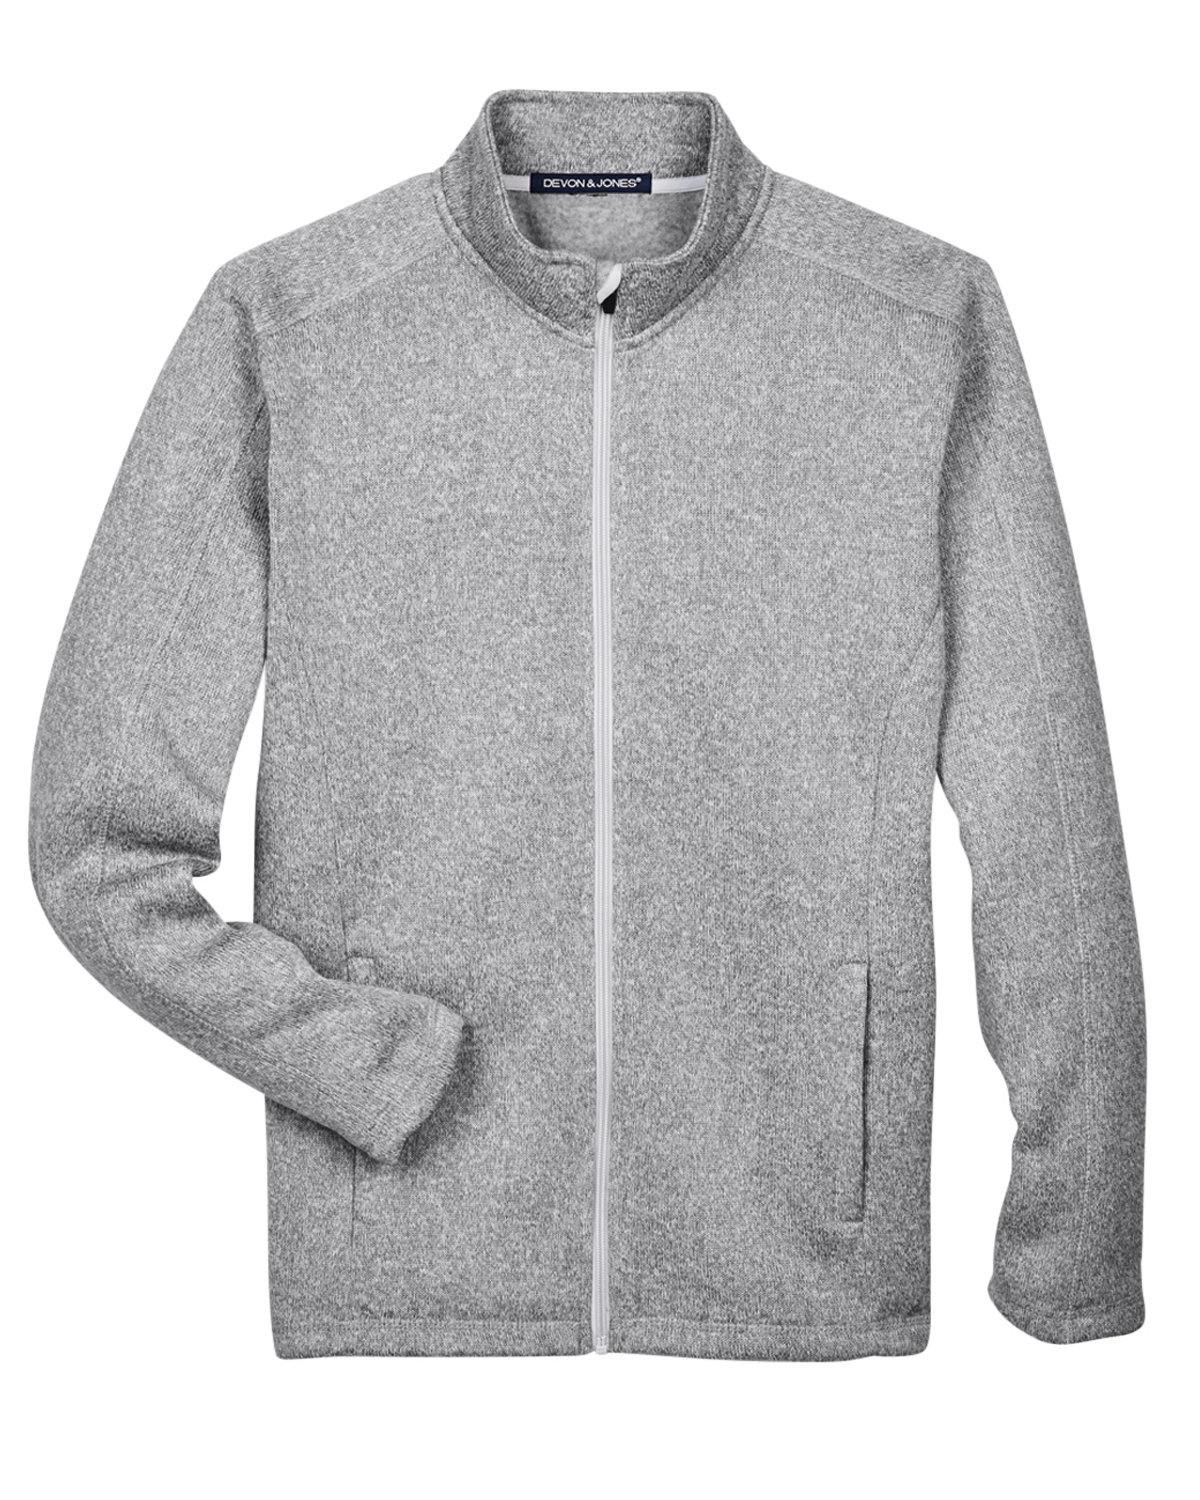 Image for Men's Bristol Full-Zip Sweater Fleece Jacket